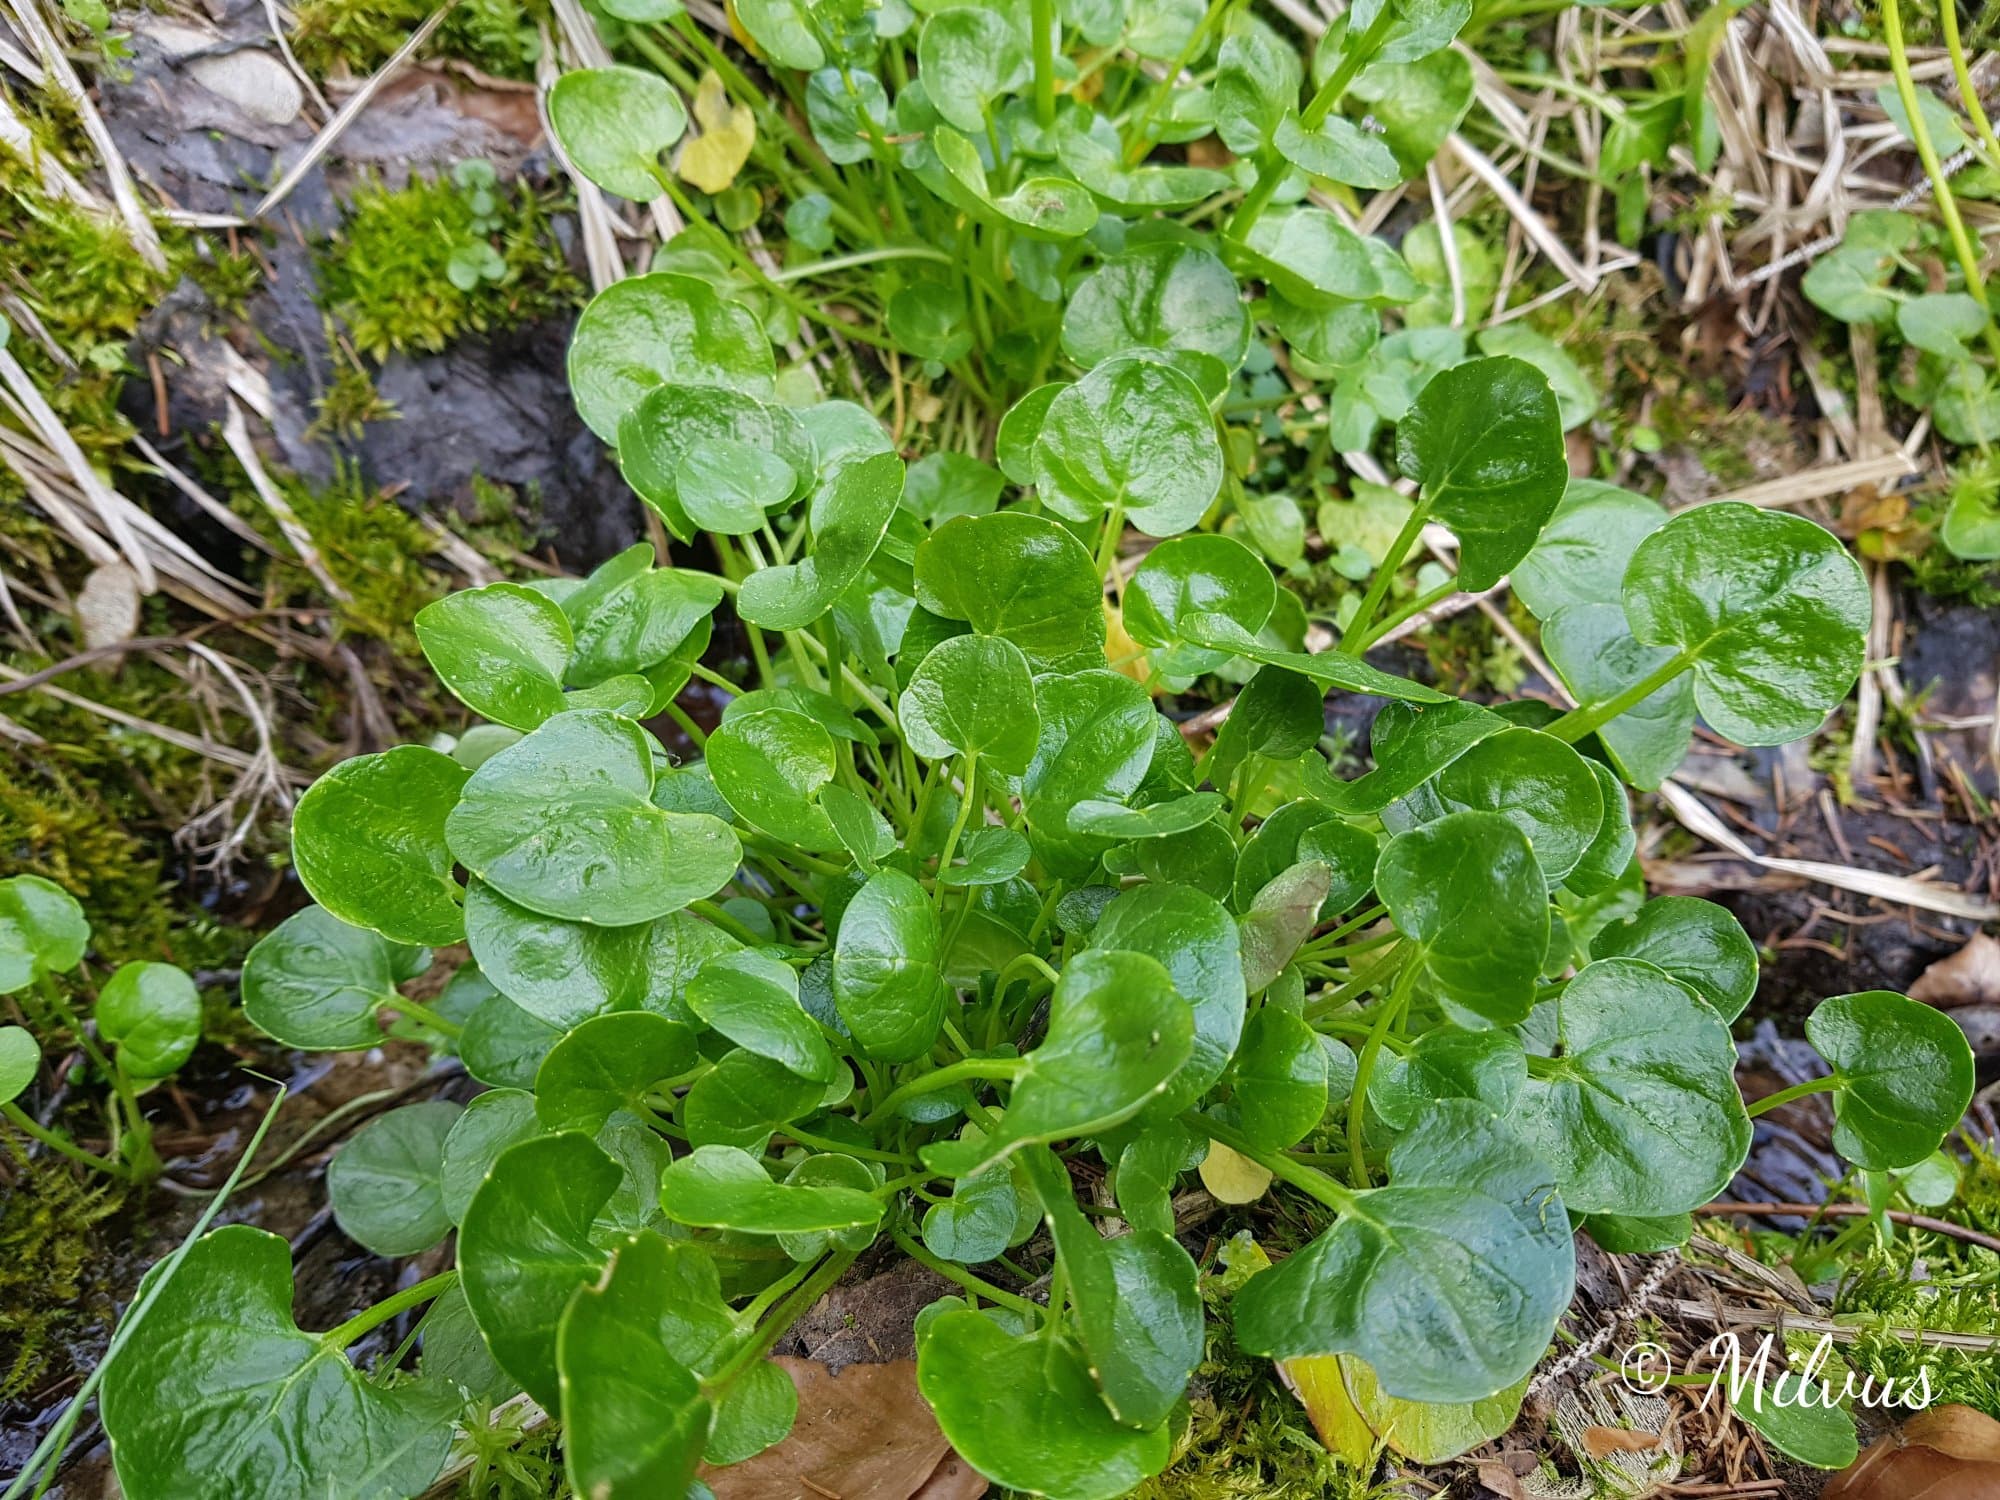 Bayerisches Löffelkraut - die grünen Blätter sind nieren- und herzförmig aufgebaut. Sie sitzen in einer dichten Gruppe auf dem Boden zusammen.